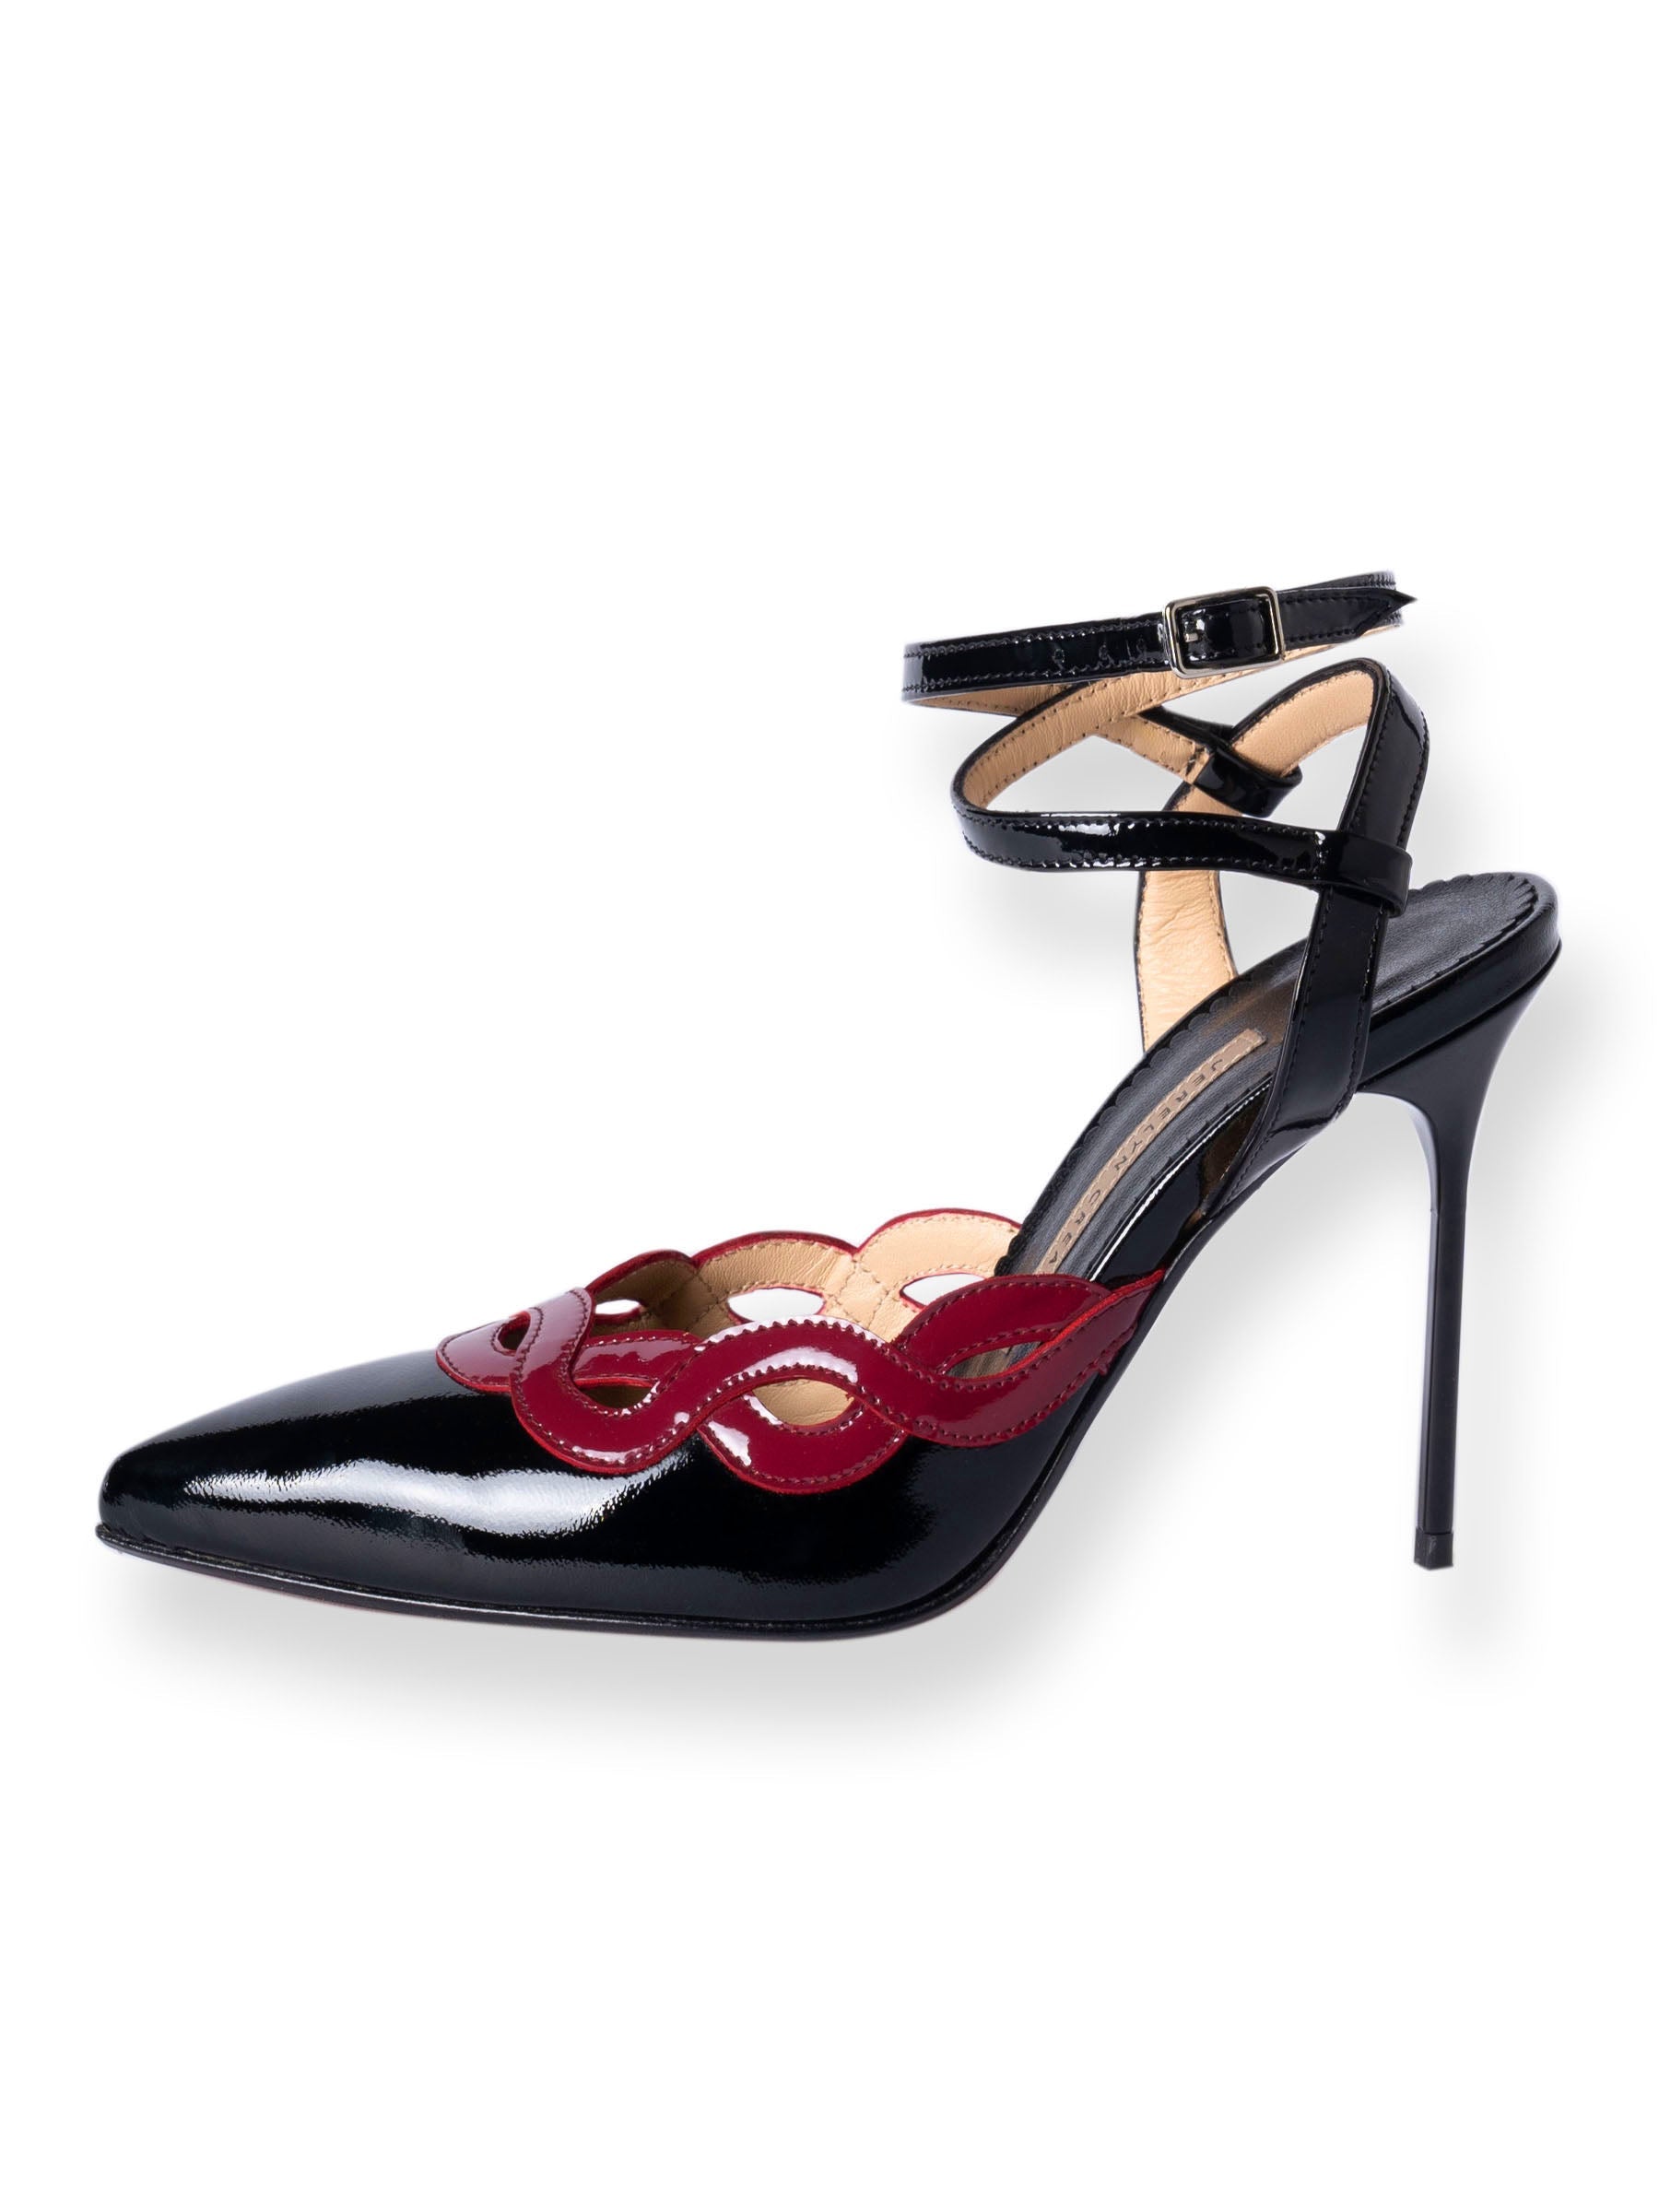 LOLA NERO 9.5cm Italian Leather Heels